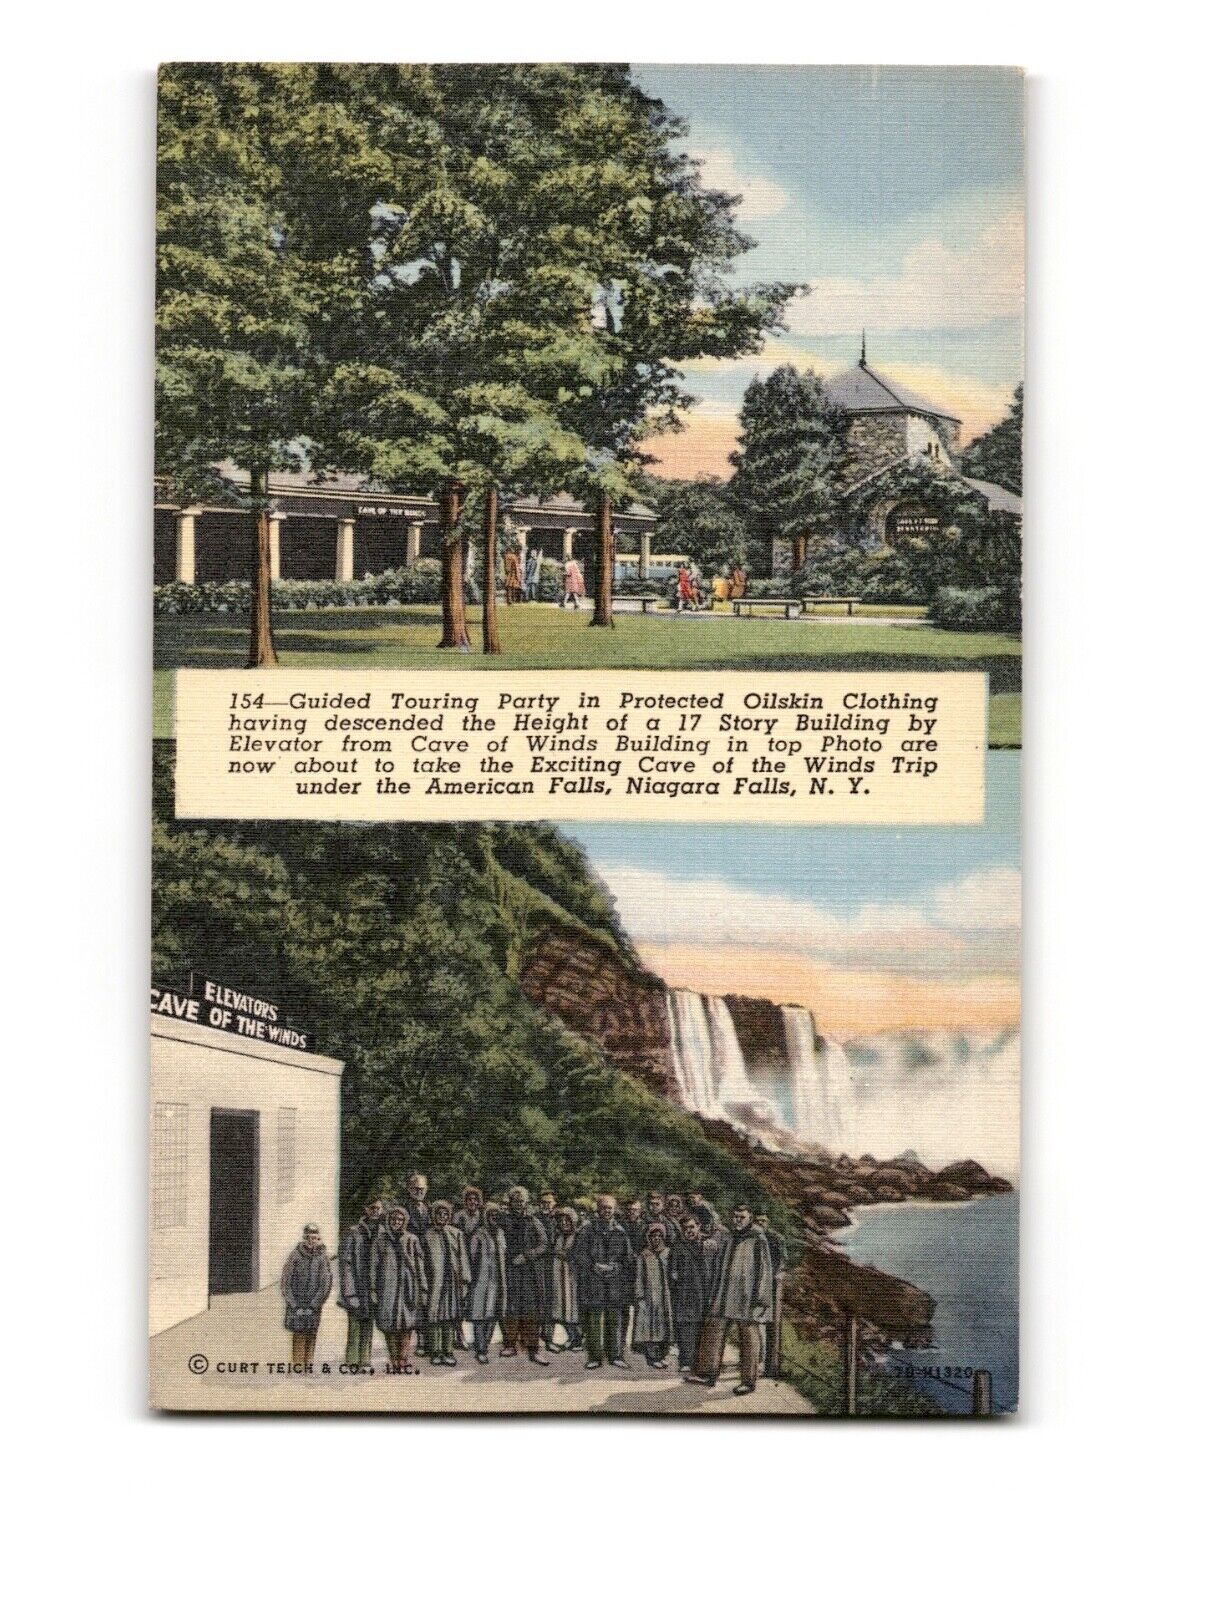 HOWARD LA GROU, 1 EAST SWAN ST., BUFFALO, N. Y. Vintage Postcard